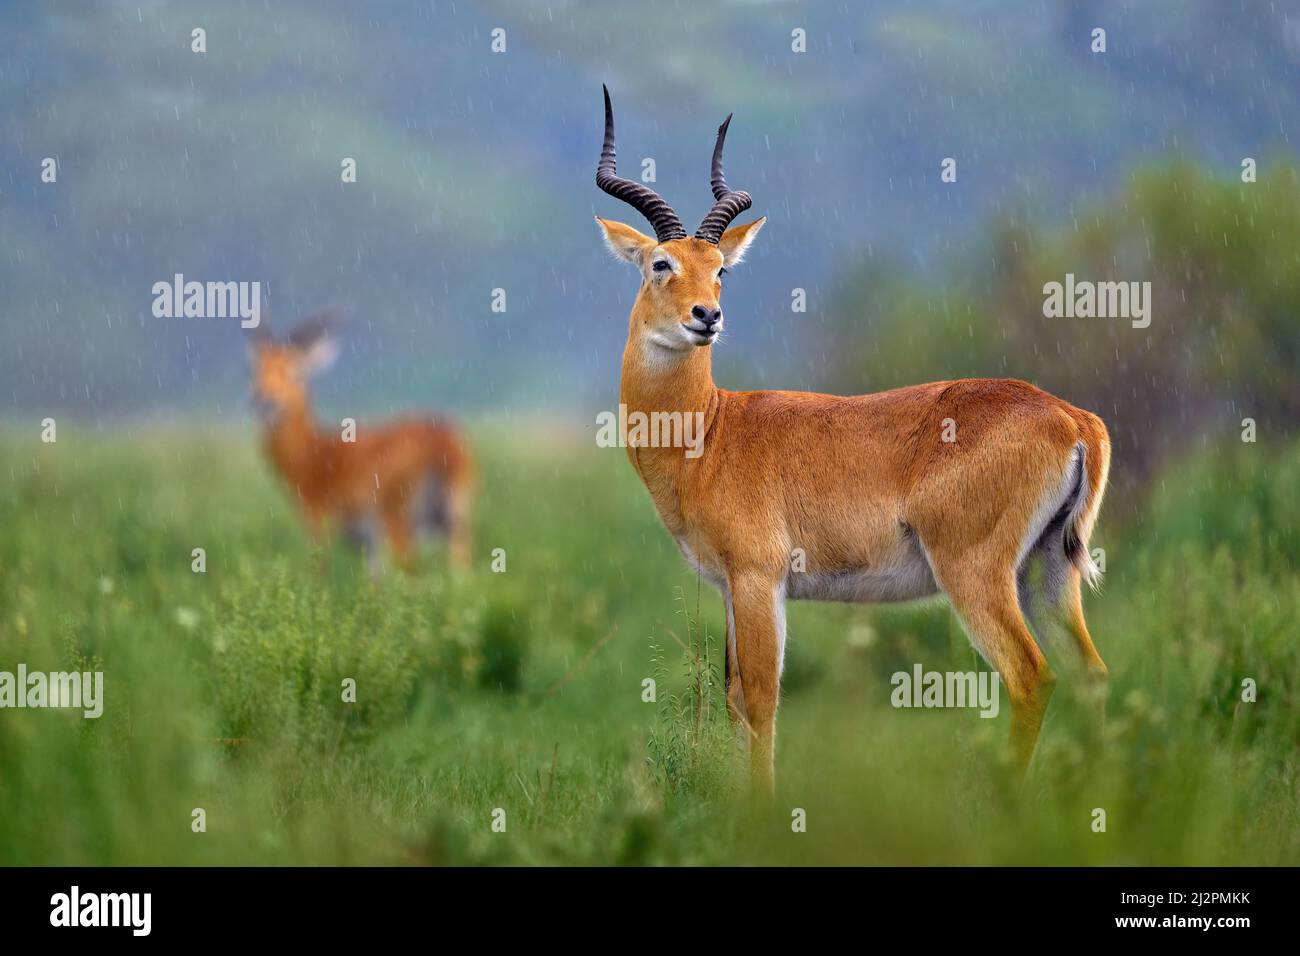 Ugandischer Kob, Kobus Kob thomasi, regnerischer Tag in der Savanne. KOB Antilope in der grünen Vegetation während des Regens, Queen Elizabeth NP in Uganda, Afrika. Stockfoto